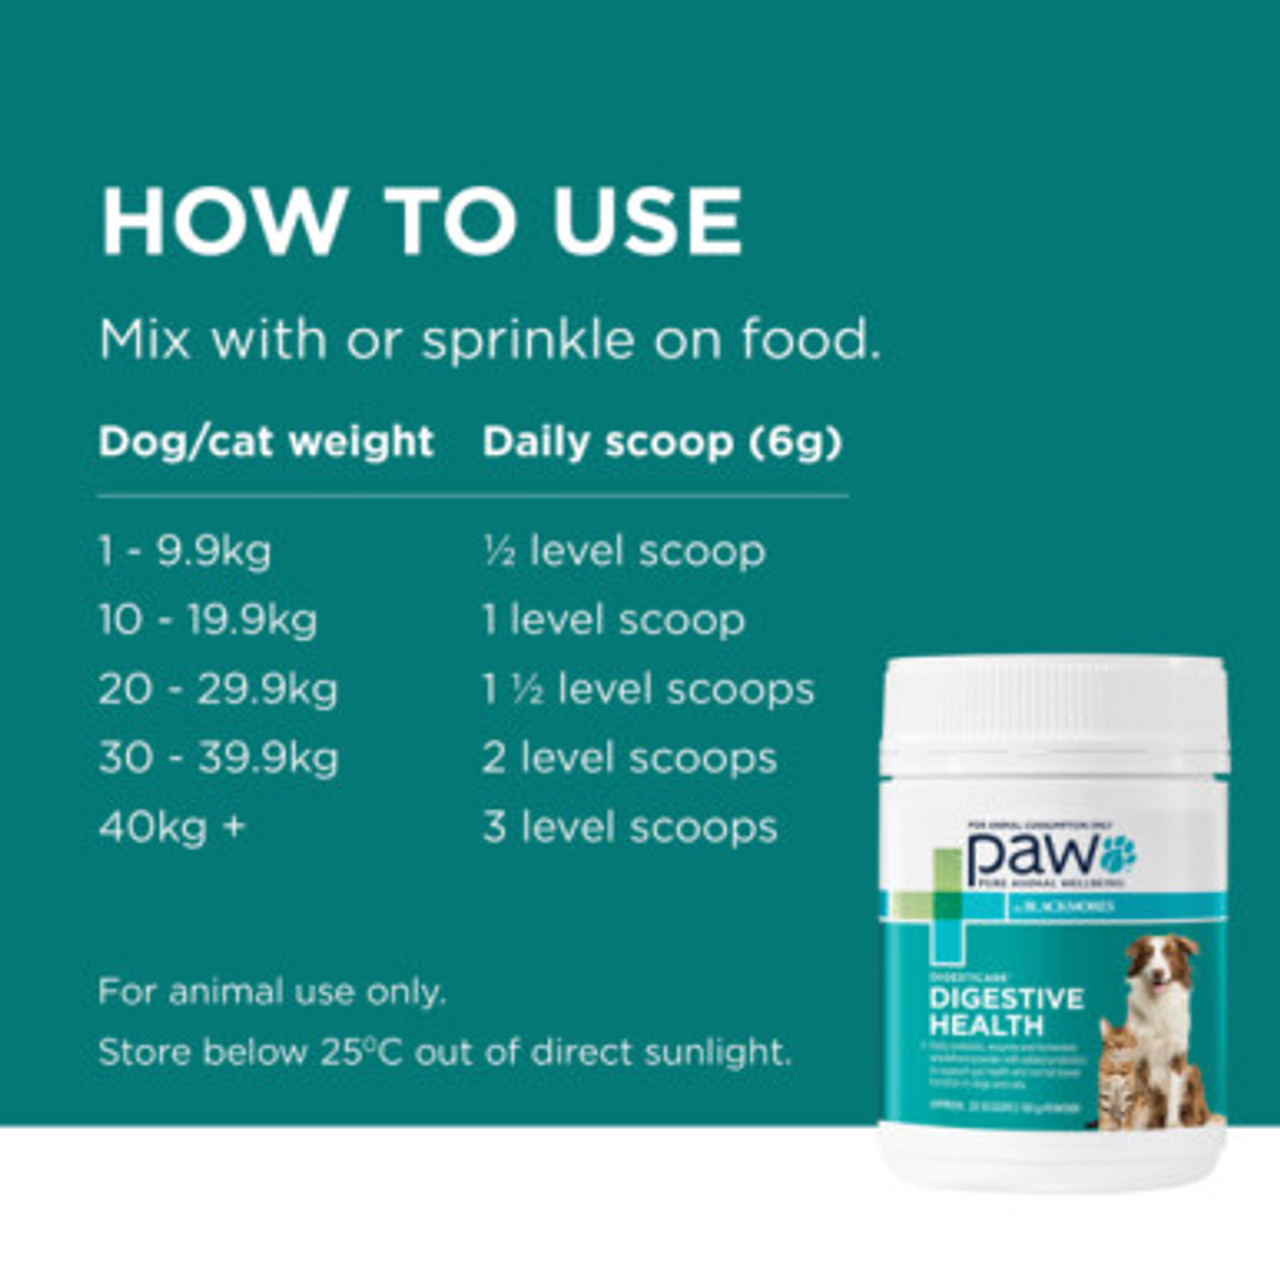 PAW By Blackmores DigestiCare Probiotique pour chiens et chats 150g